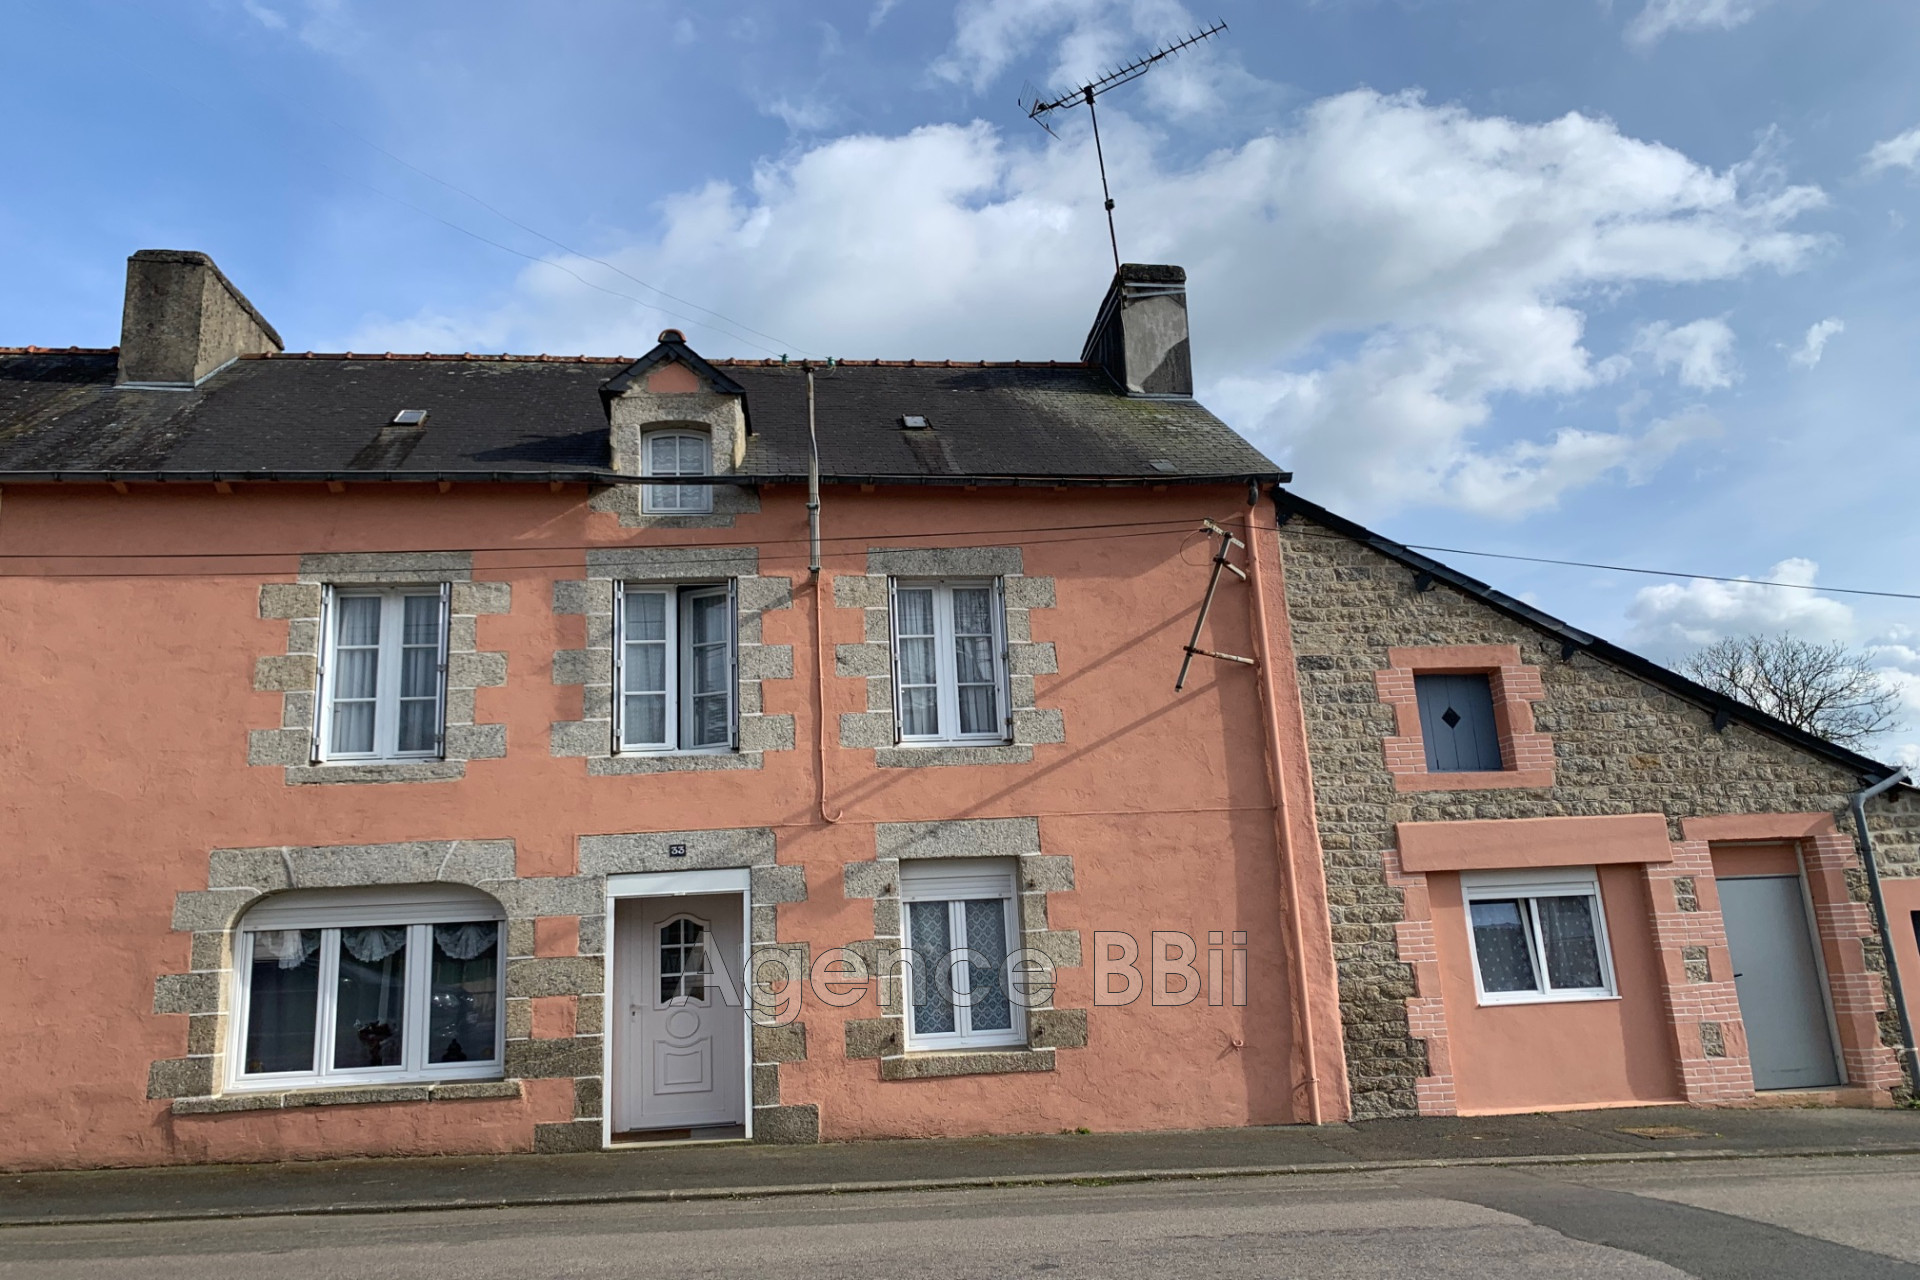 Vente Maison à Saint-Nicolas-du-Pélem (22480) - BBII